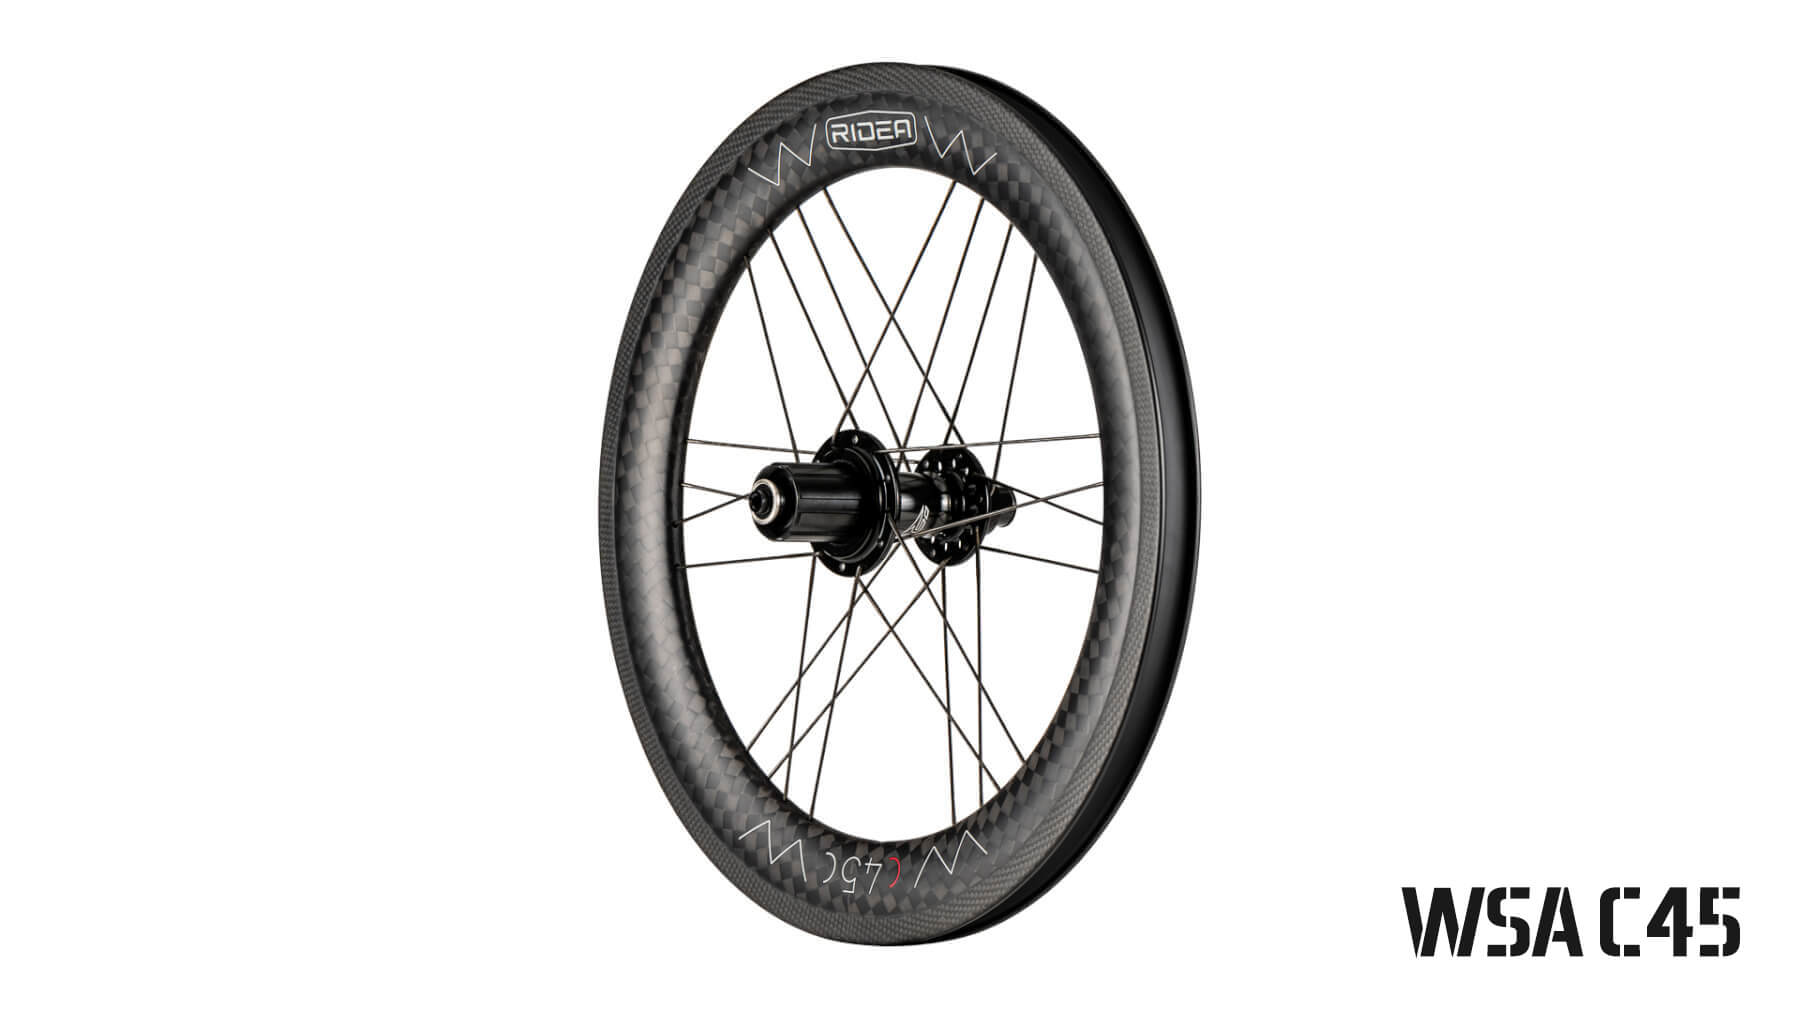 369 mm carbon wheels (Moulton)